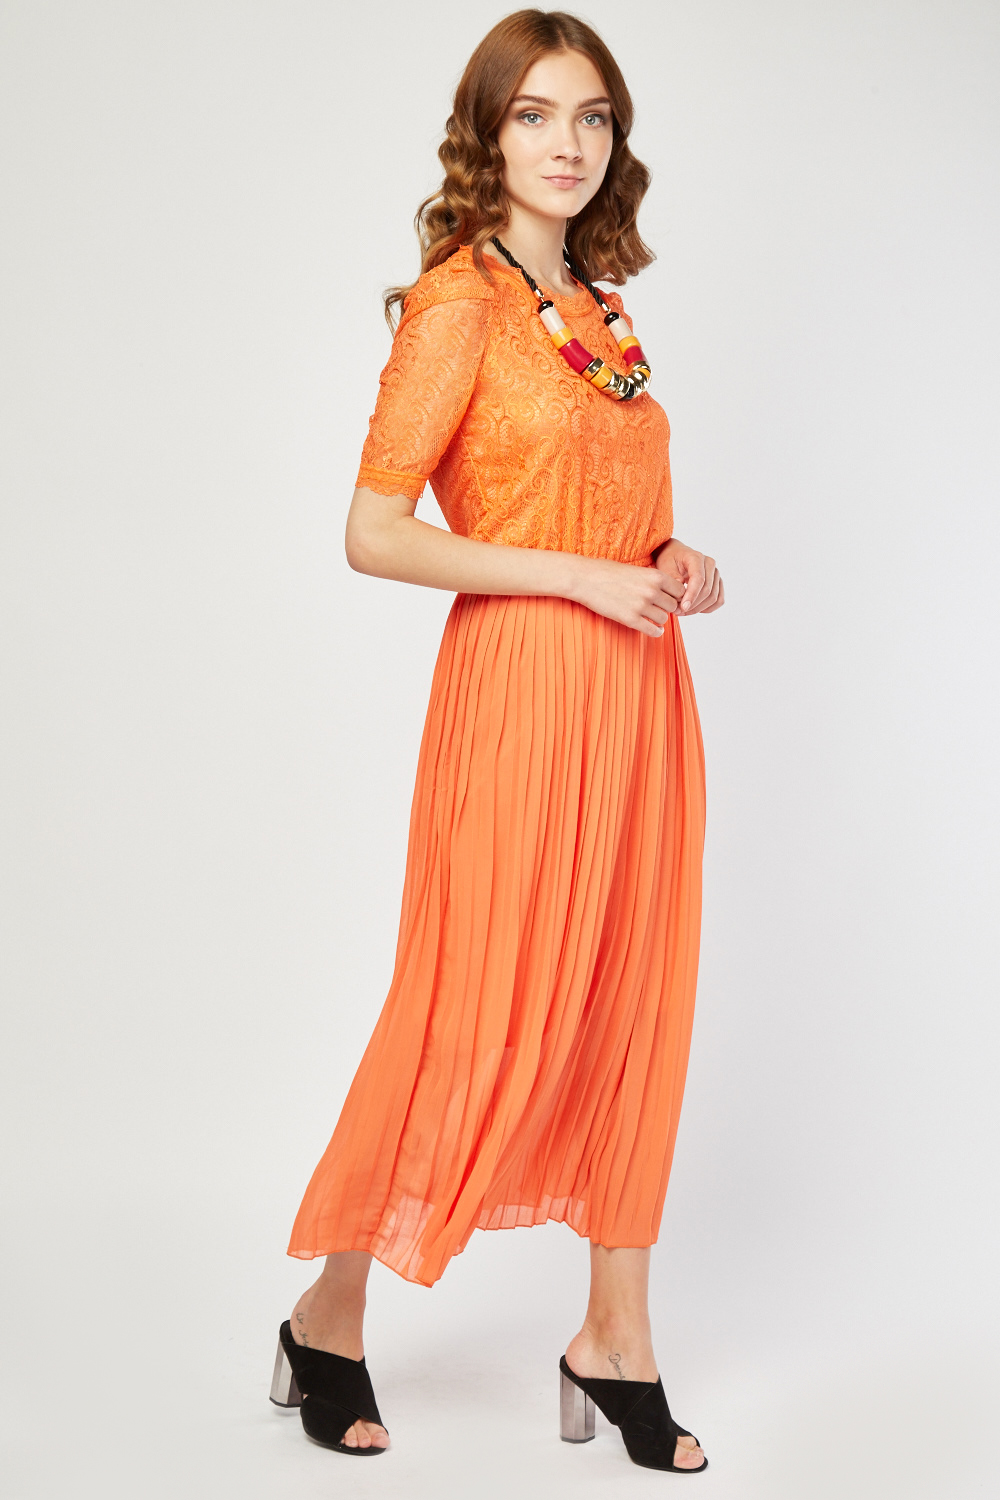 Lace Bodice Chiffon Pleated Dress - Just $7